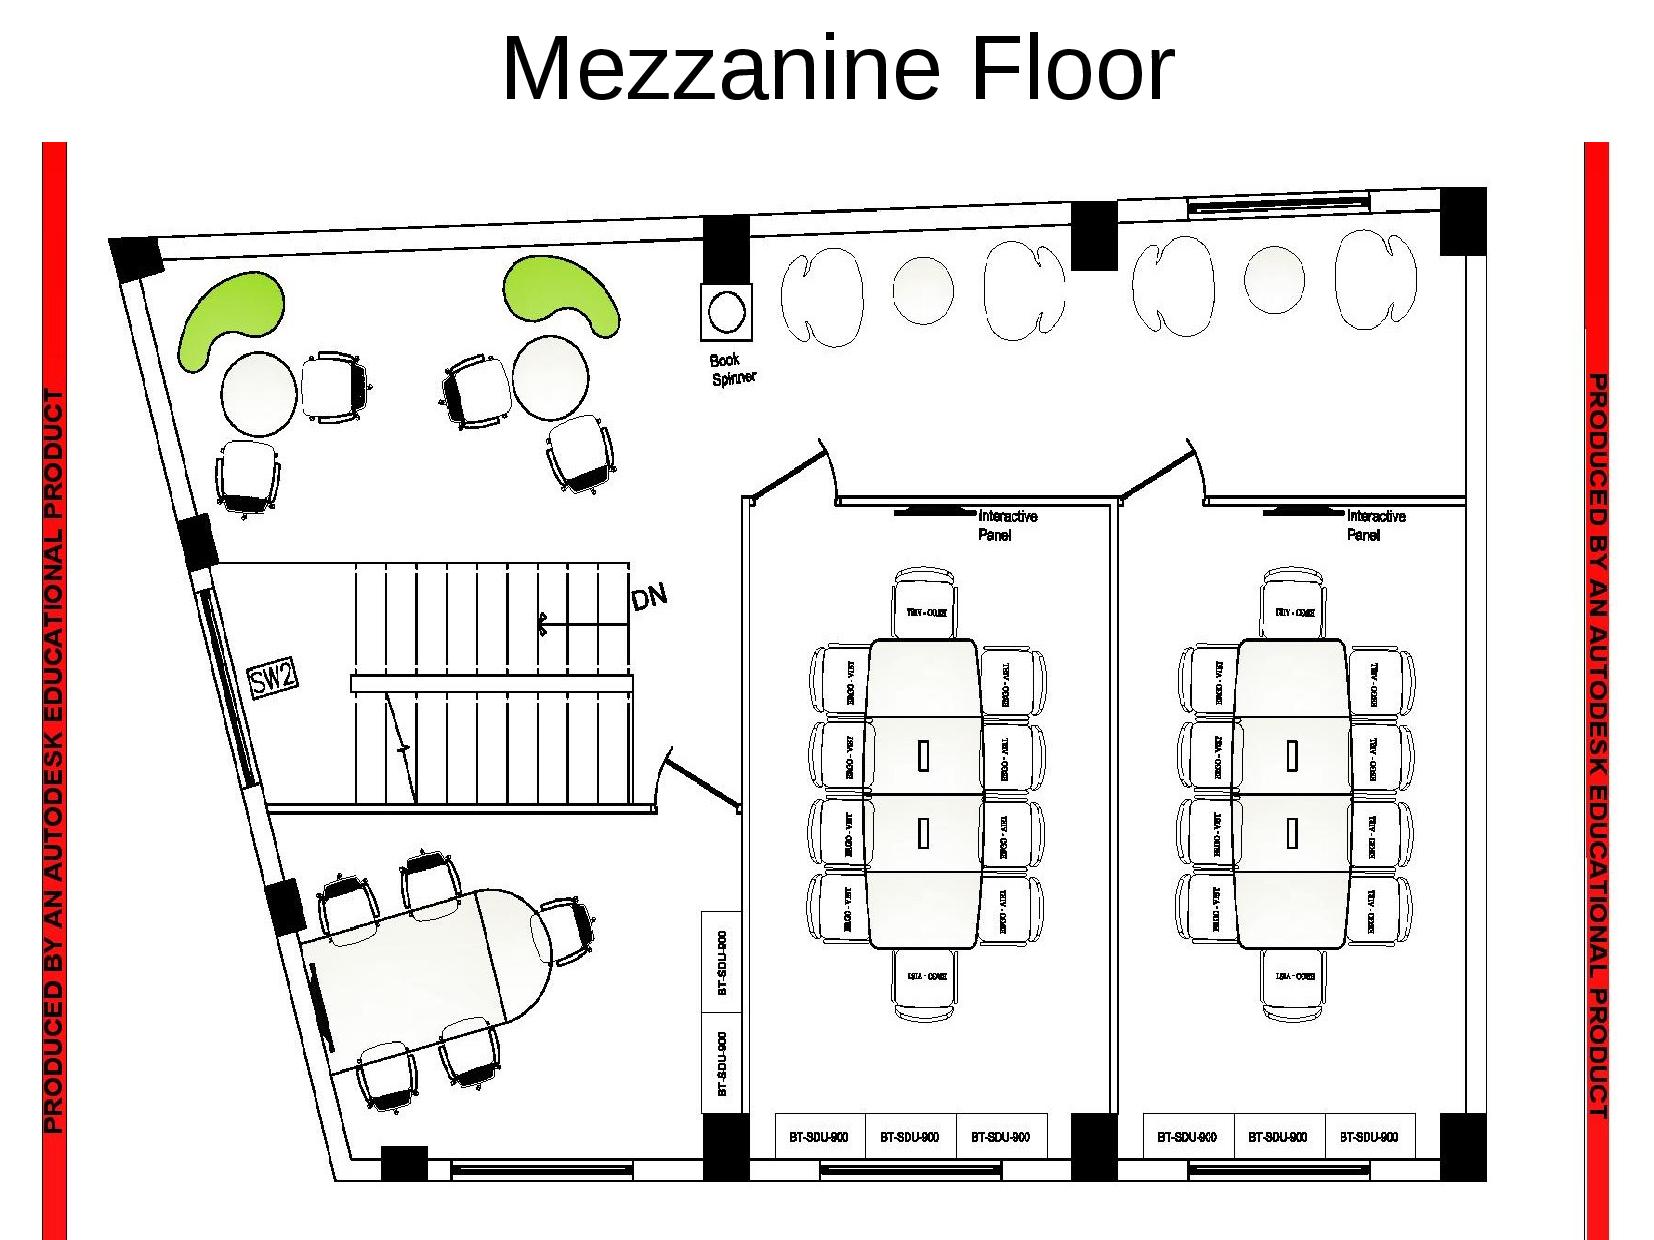 Mezannine Floor